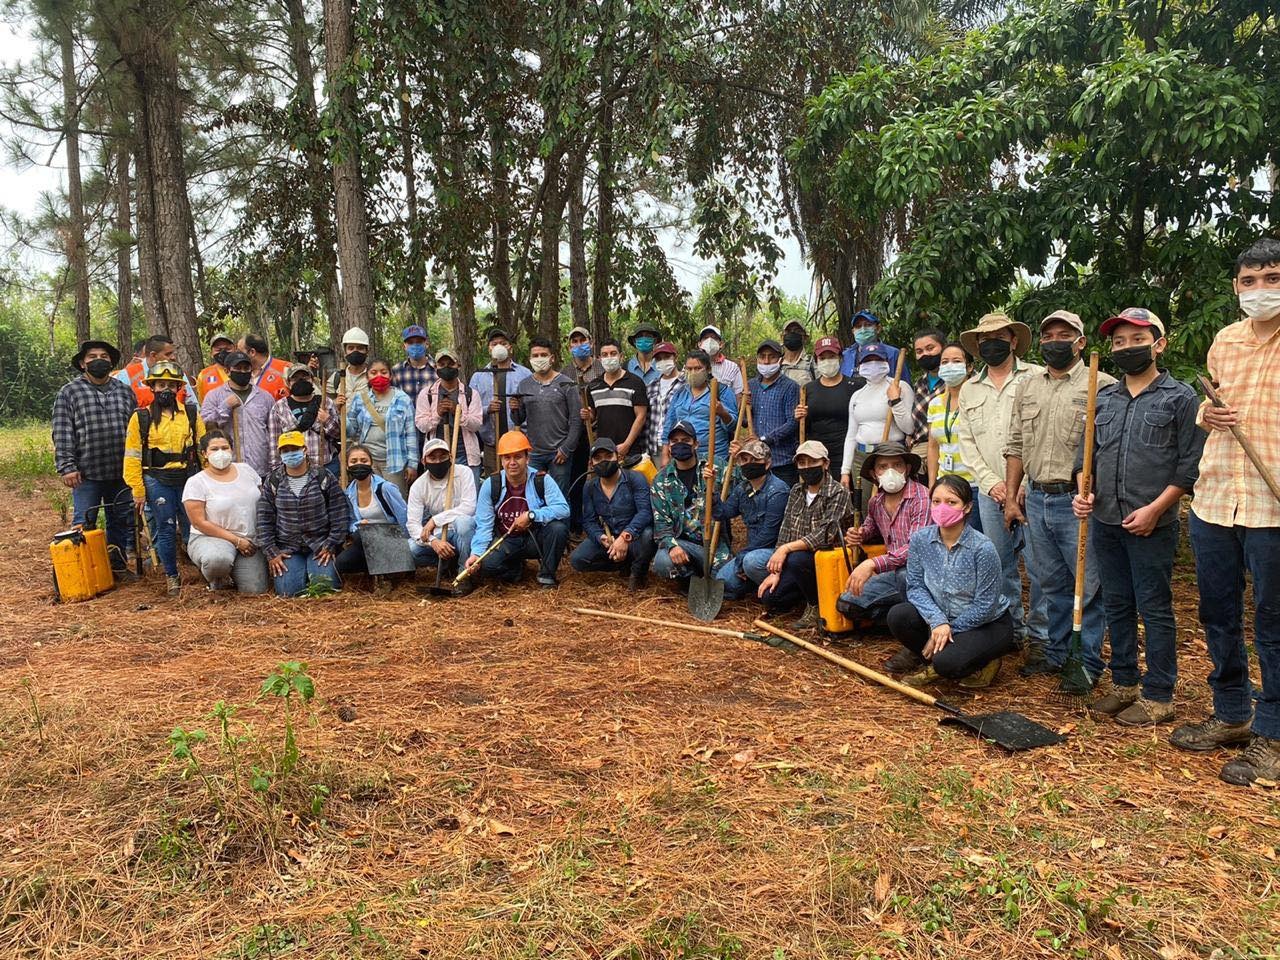 El proyecto 'Plantemos' ha contado con la ayuda de más de 25 mil voluntarios de todo el país. (Foto Prensa Libre: Cortesía de Plantemos)